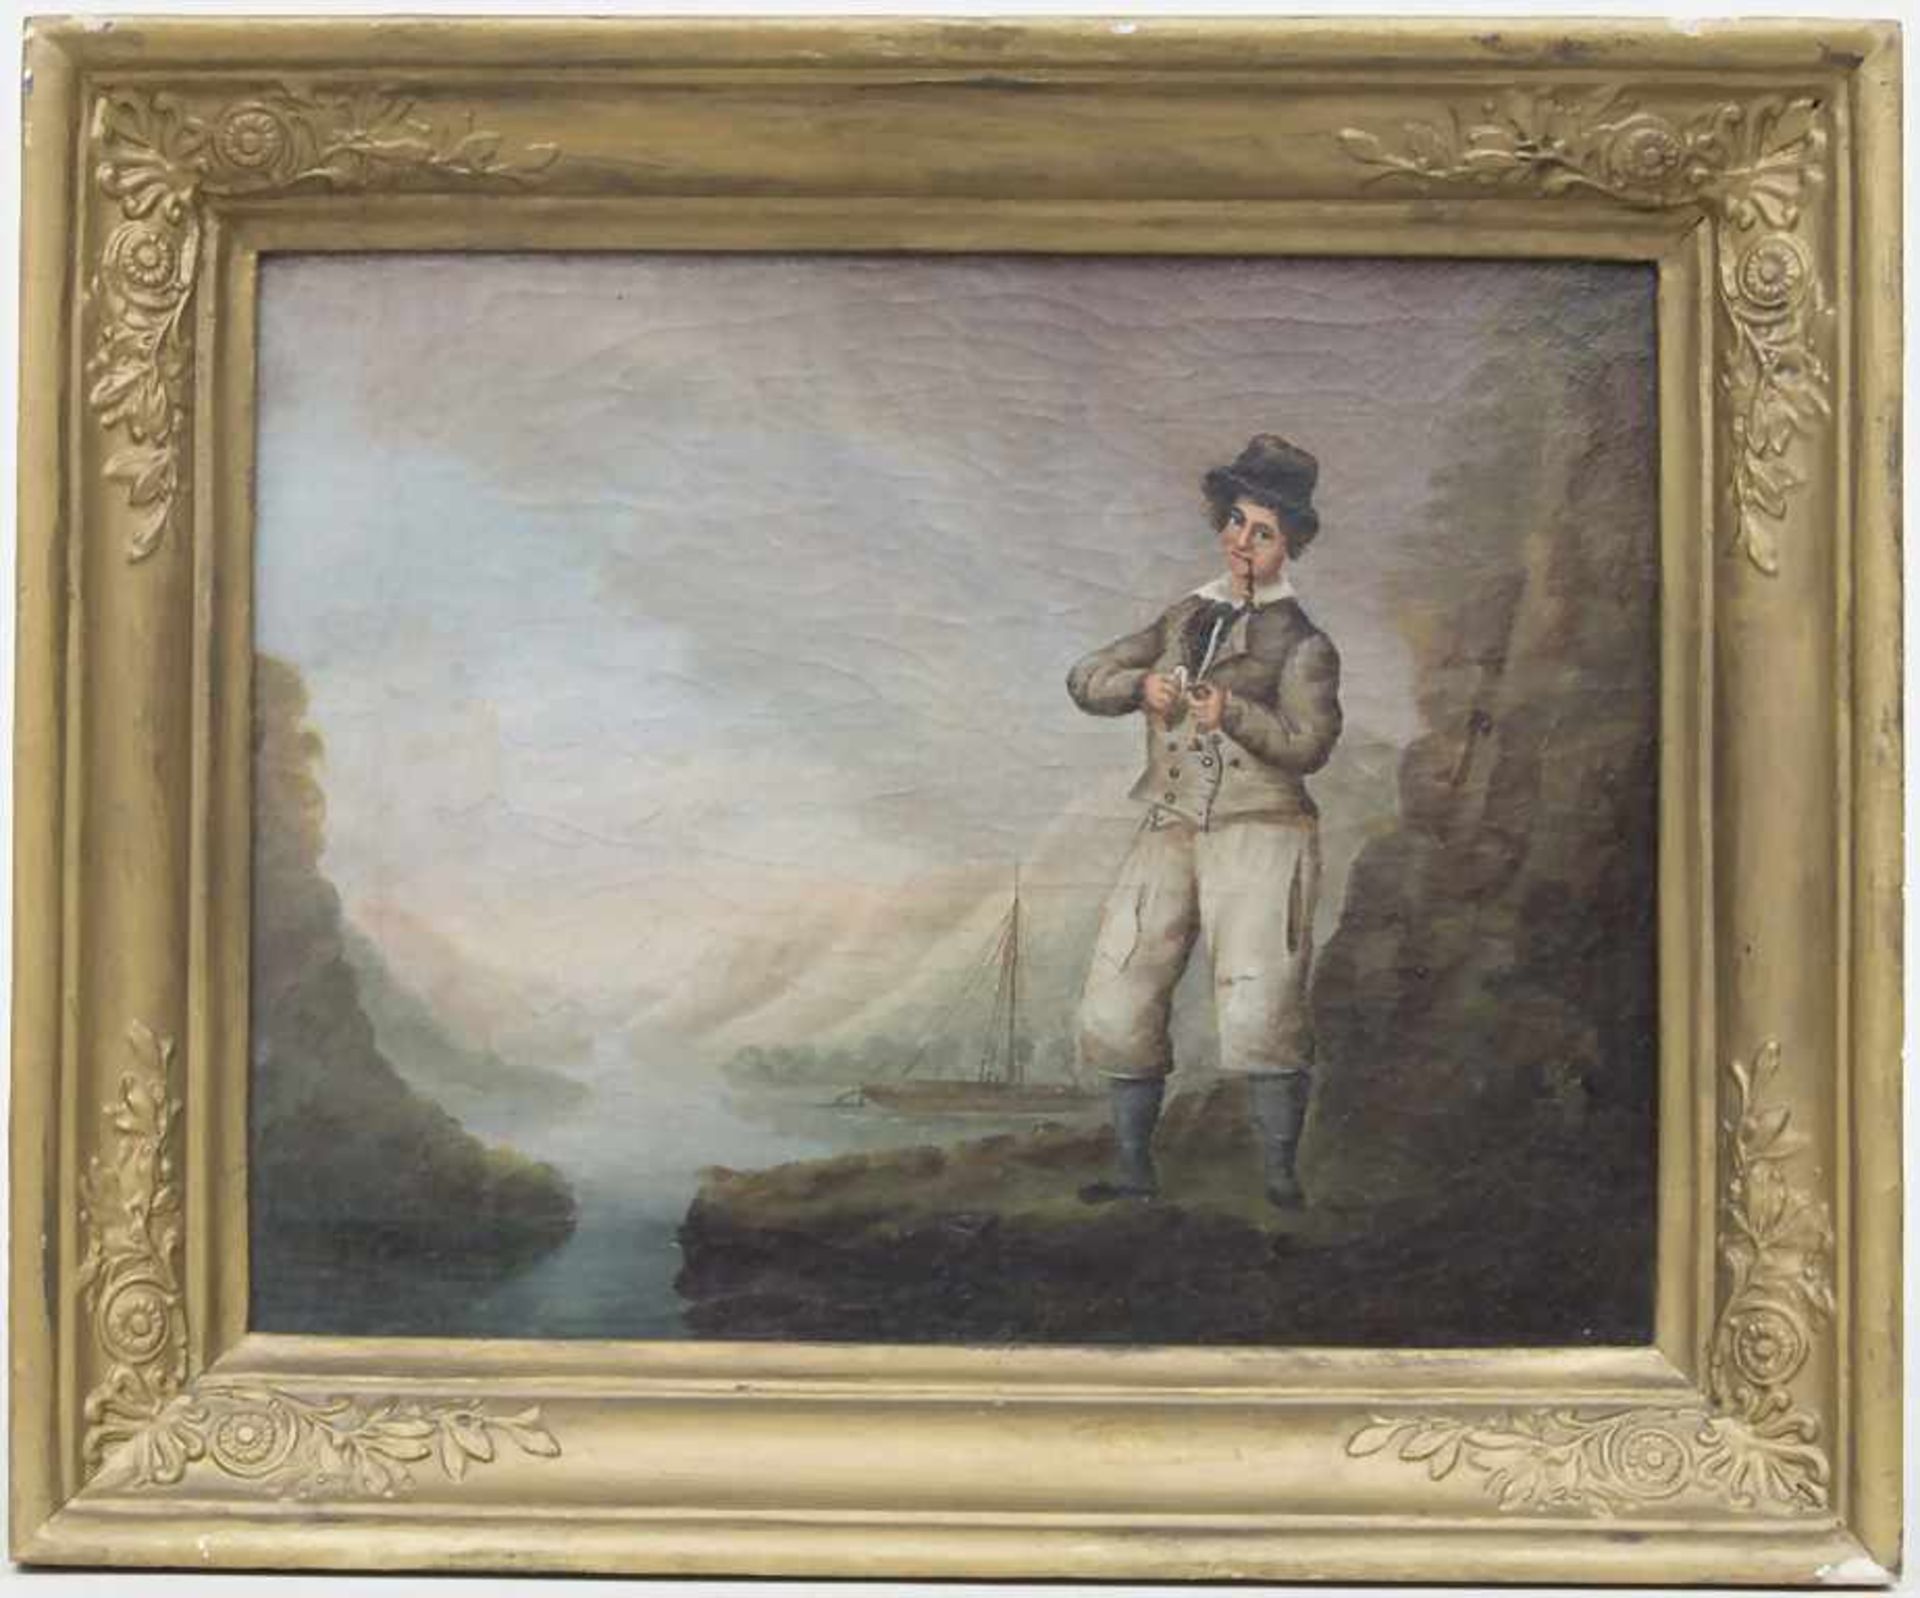 Künstler des 18. Jh., 'Pfeifenraucher vor Fjordlandschaft' / 'A pipe smoker in a fjord landscape' - Image 2 of 3